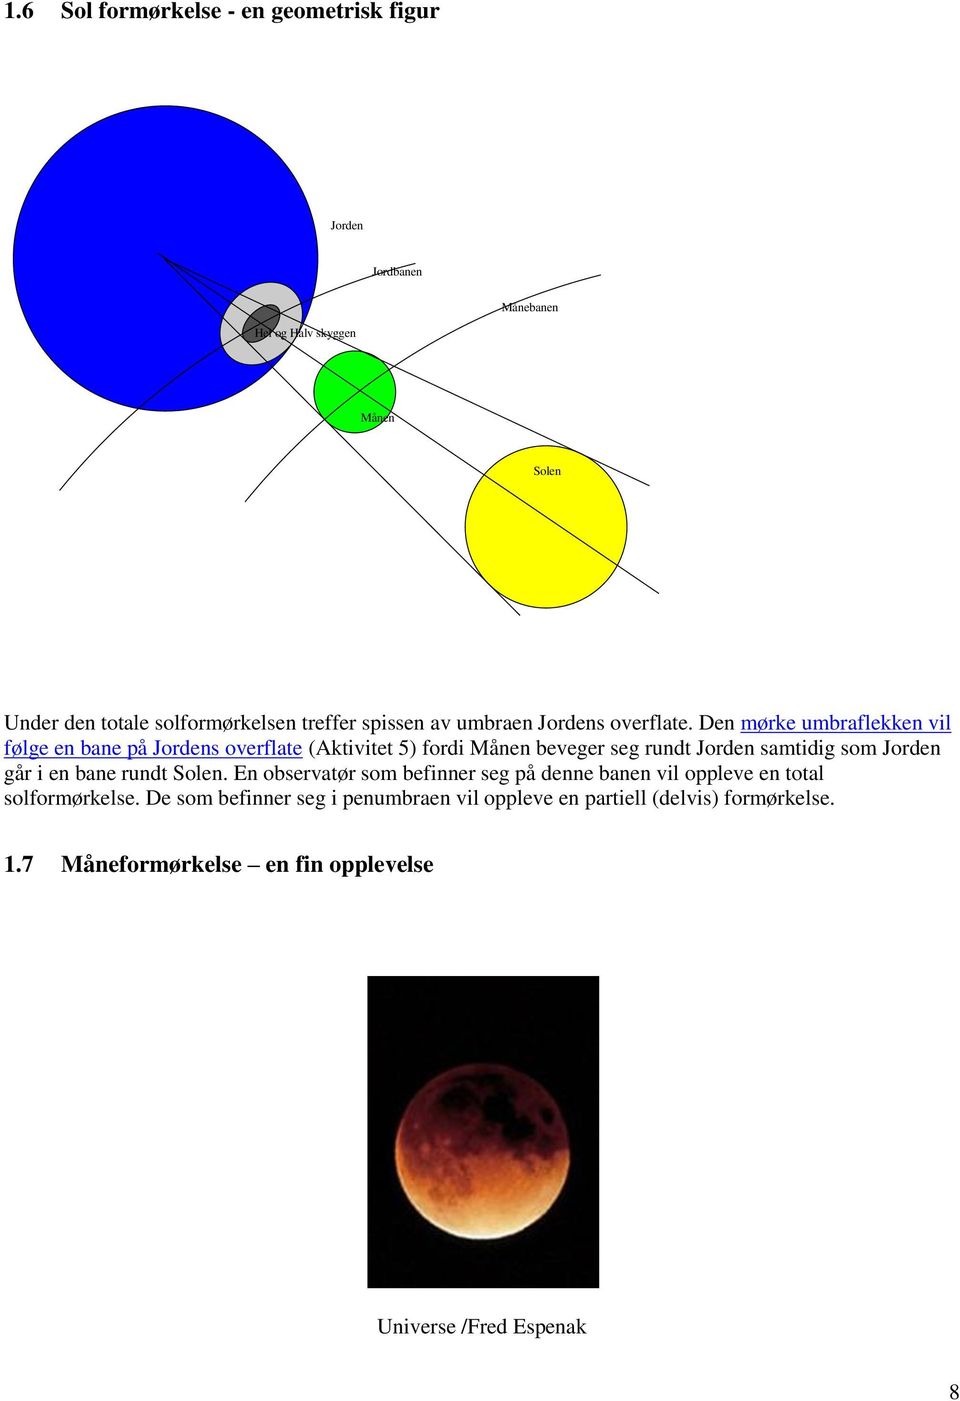 Den mørke umbraflekken vil følge en bane på Jordens overflate (Aktivitet 5) fordi Månen beveger seg rundt Jorden samtidig som Jorden går i